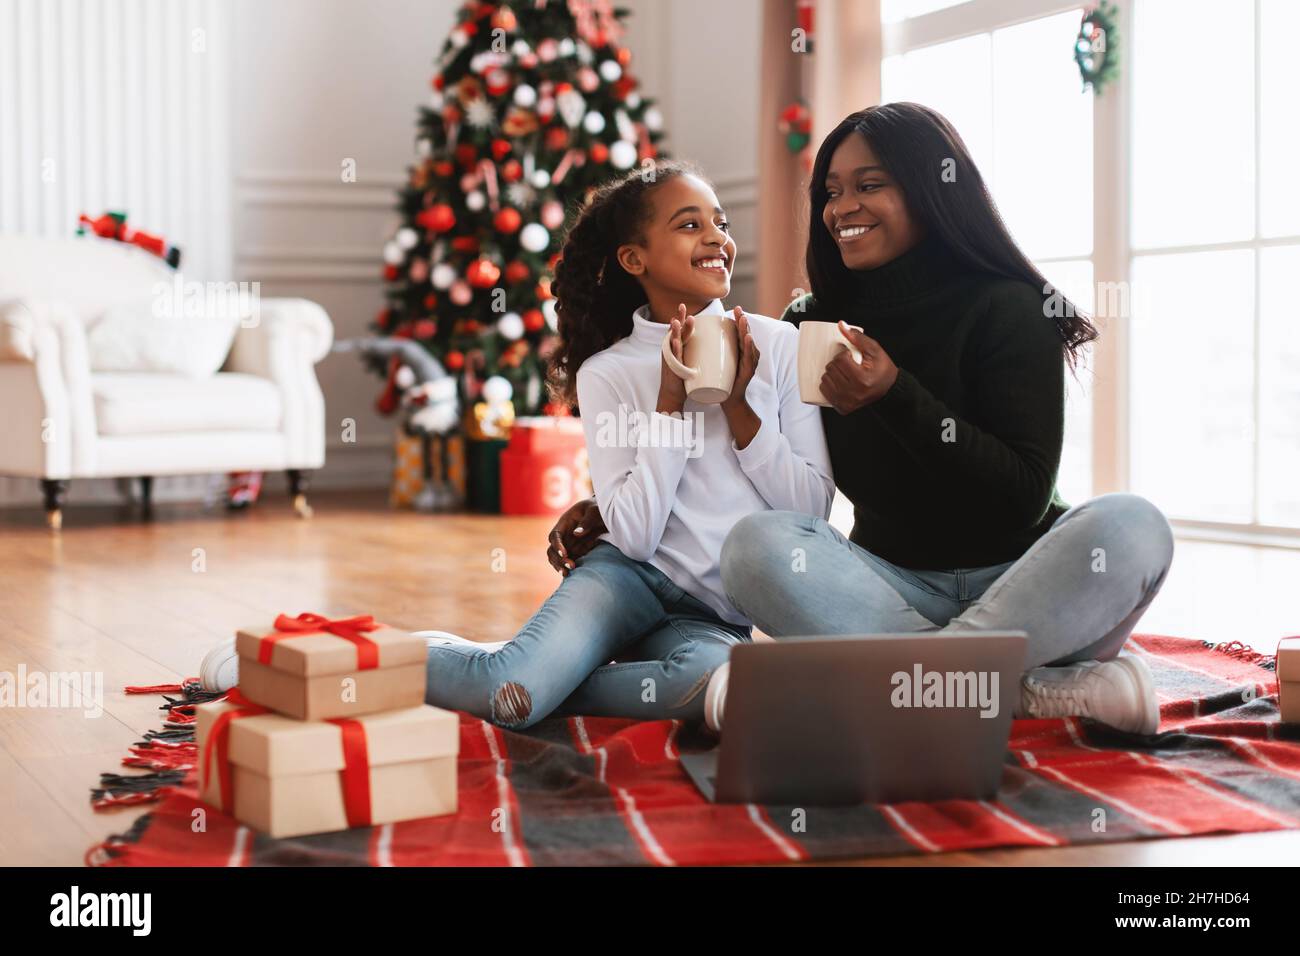 Porträt einer glücklichen schwarzen Familie, die am Weihnachtsabend Koka trinkt Stockfoto